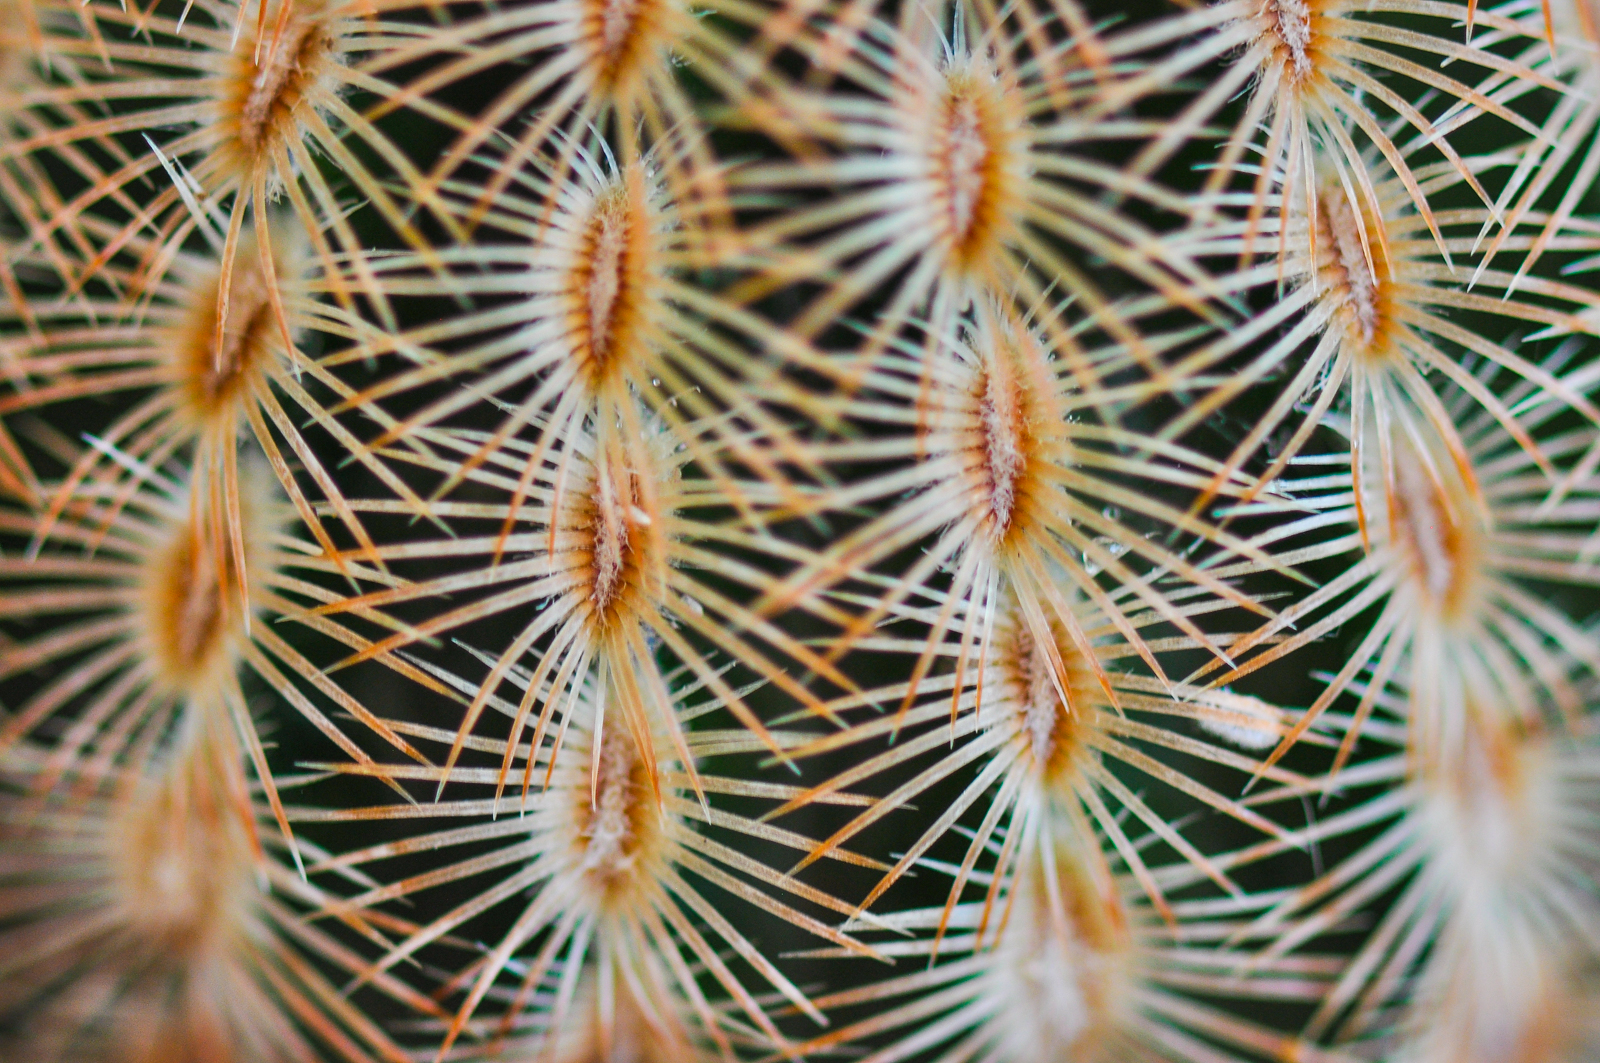 Photo by Sara A Knight  |  Echinocereus albiflora, in detail